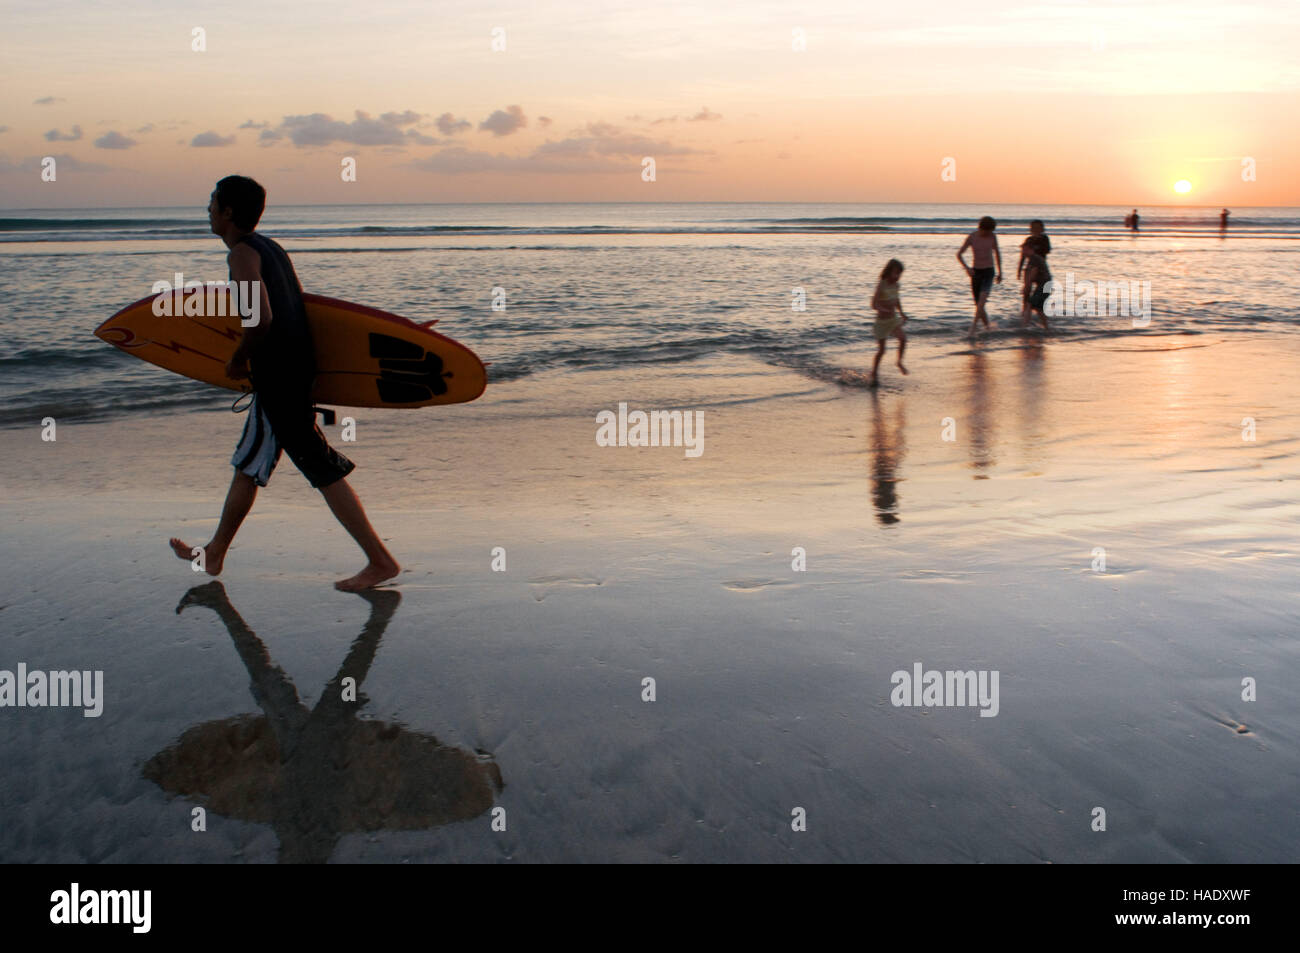 Surfer am Strand von Kuta. Surfunterricht. Bali. Kuta ist eine Küstenstadt im Süden von der Insel Lombok in Indonesien. Die Landschaft ist berauscht Stockfoto